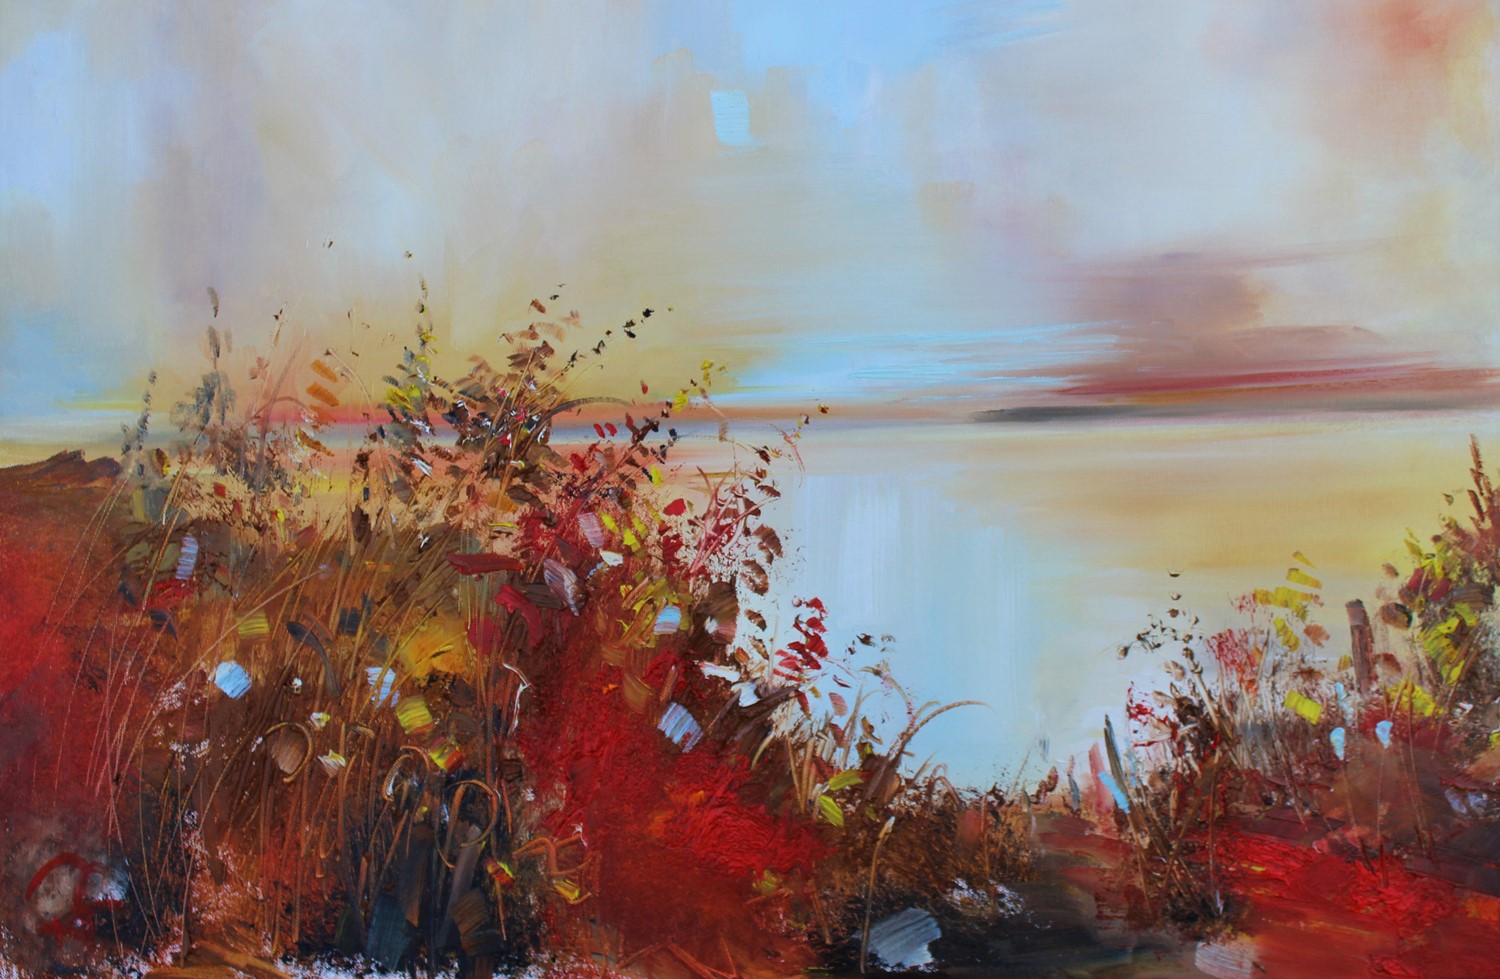 'Through bracken and wild reeds' by artist Rosanne Barr